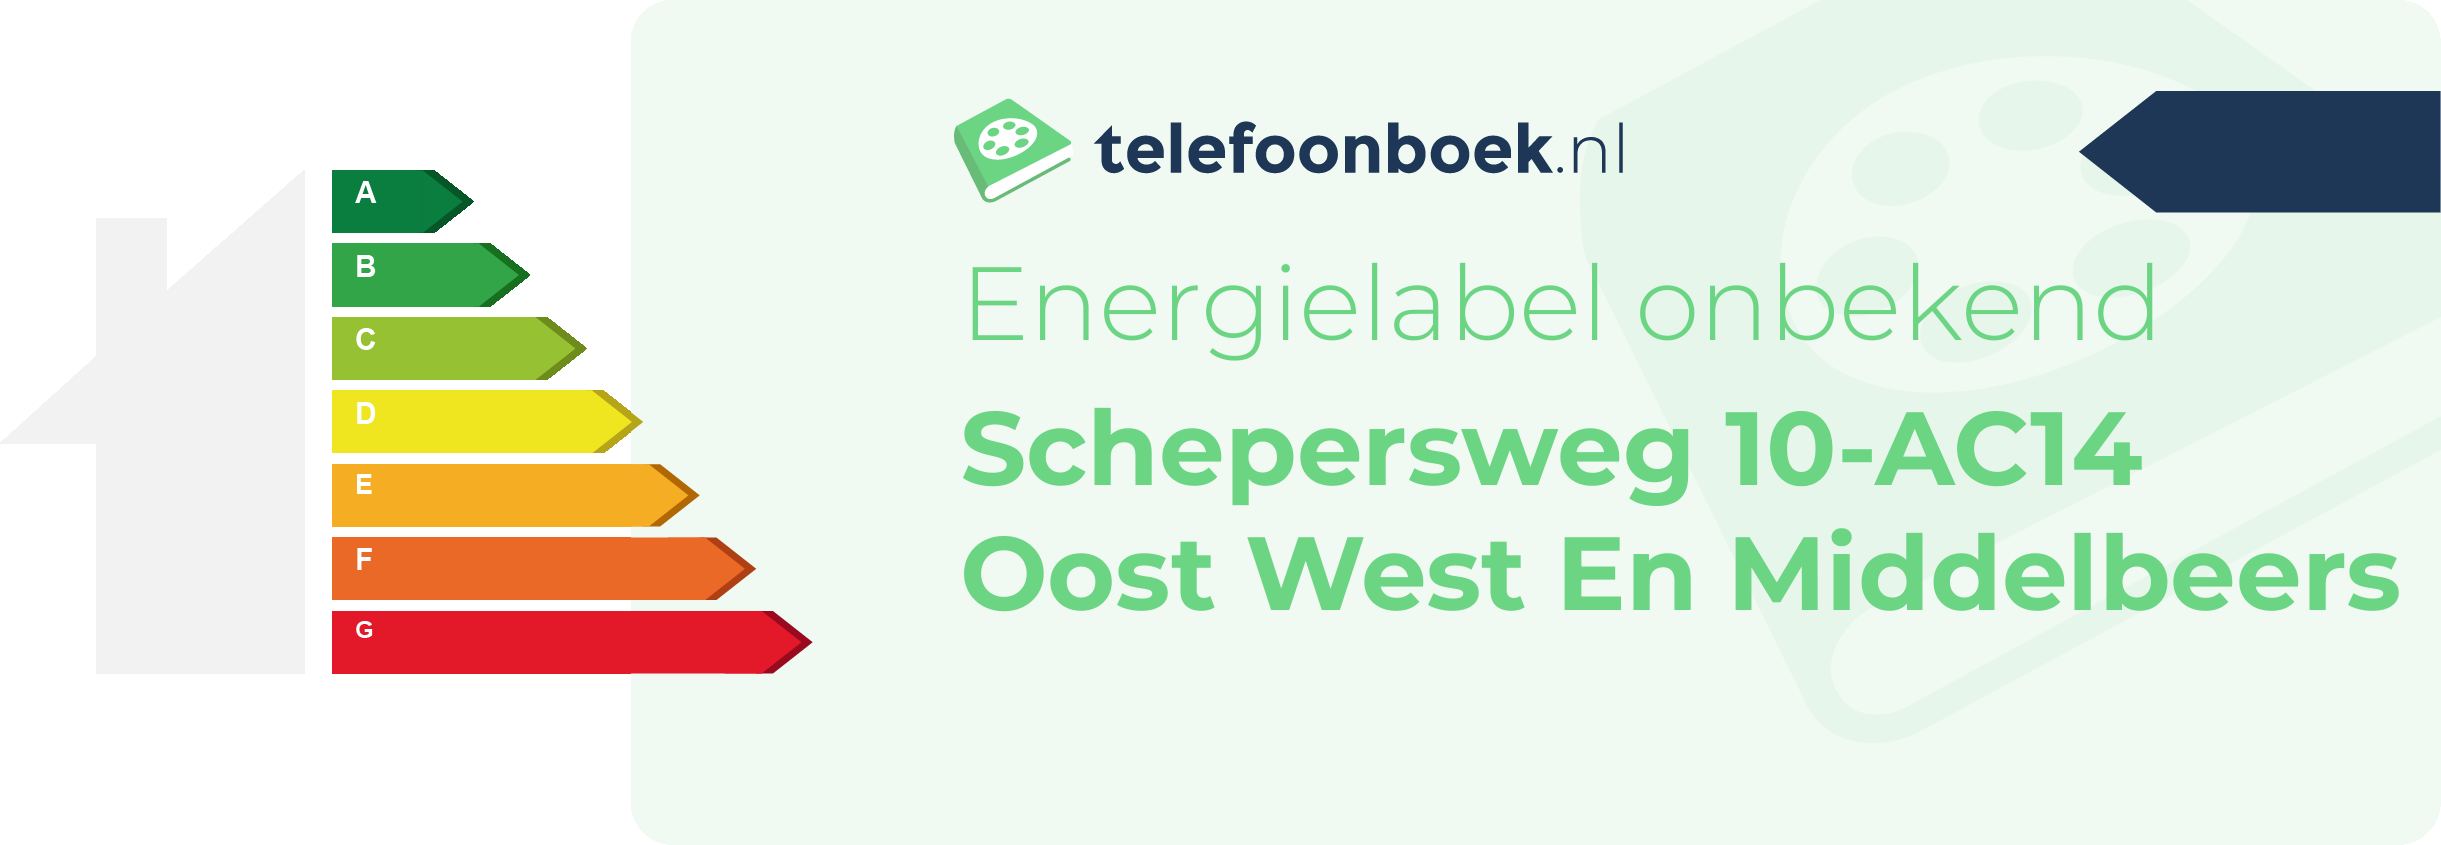 Energielabel Schepersweg 10-AC14 Oost West En Middelbeers